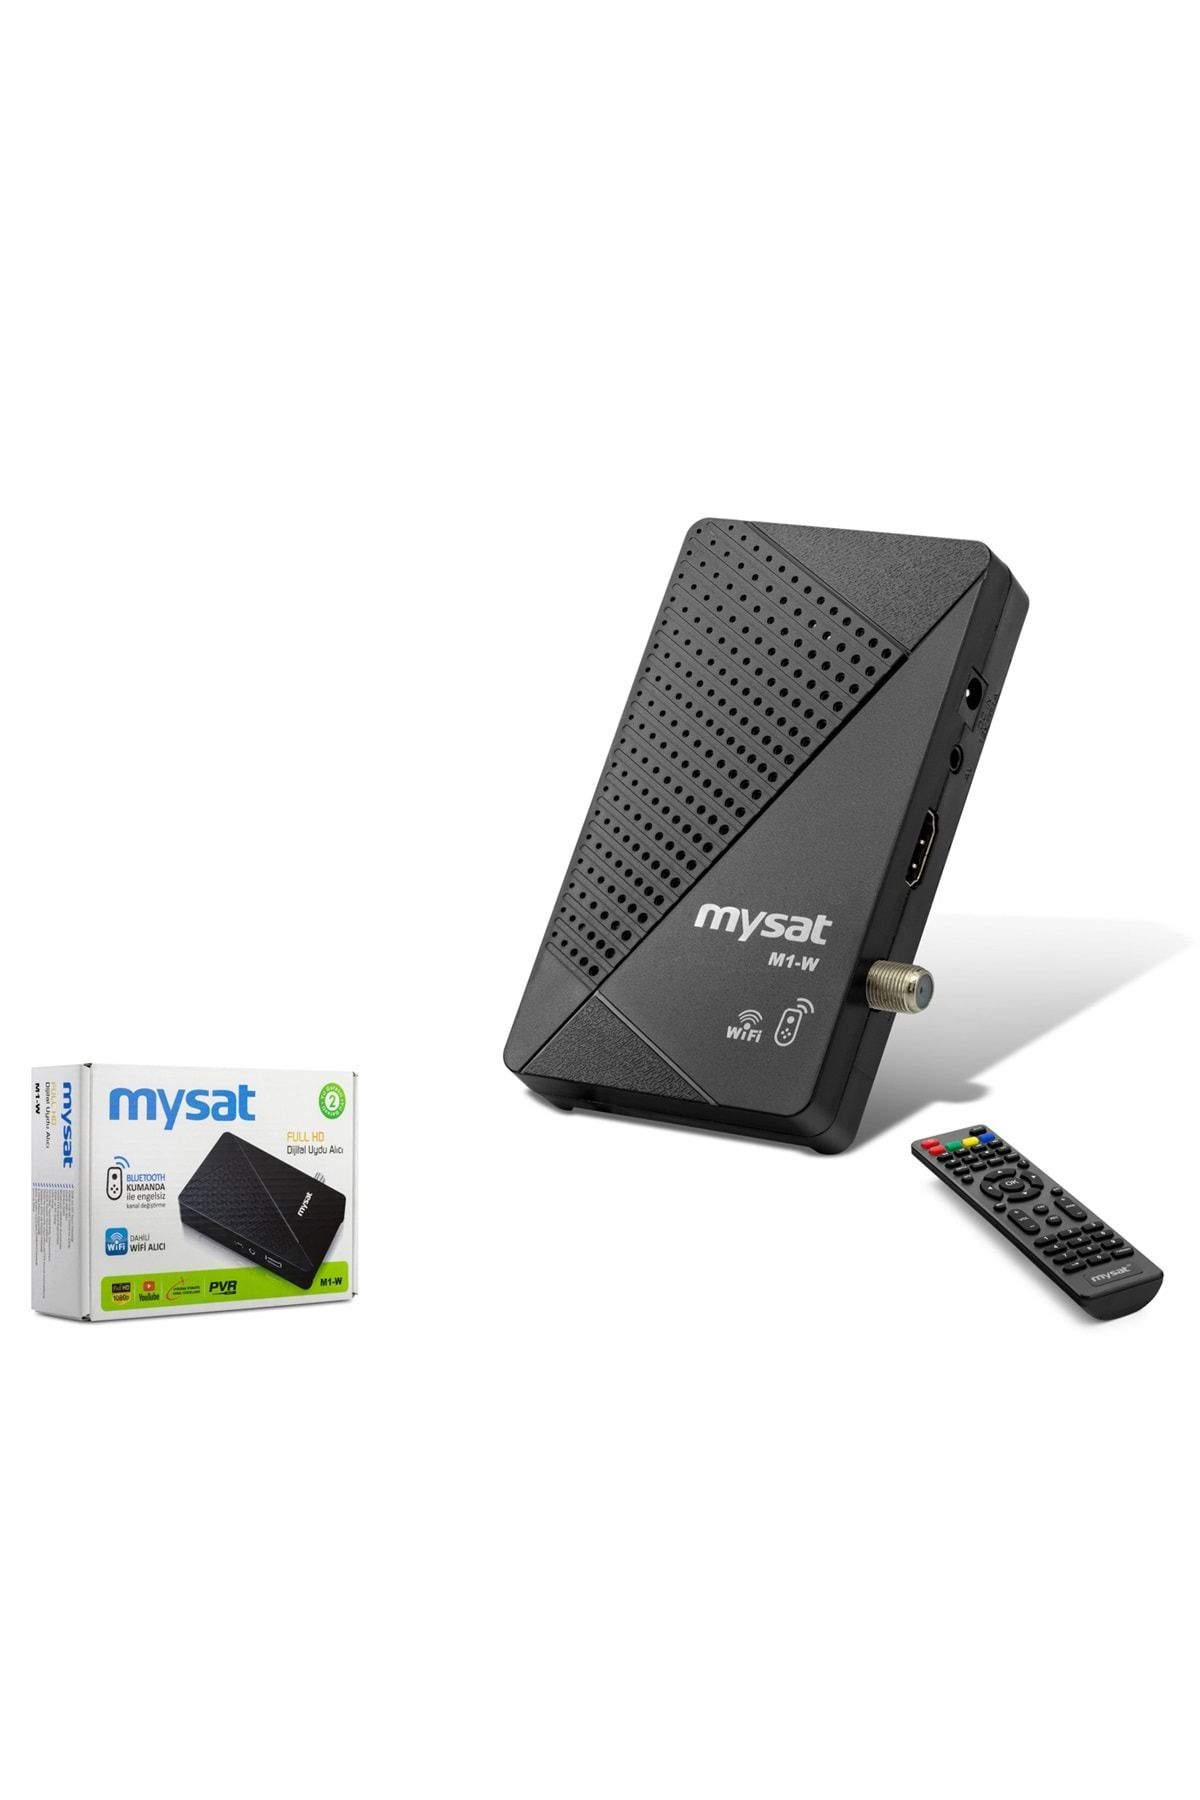 MYSAT M1-w Sunplus Uydu Alıcı Bluetooth Kumanda (DAHİLİ WIFI)